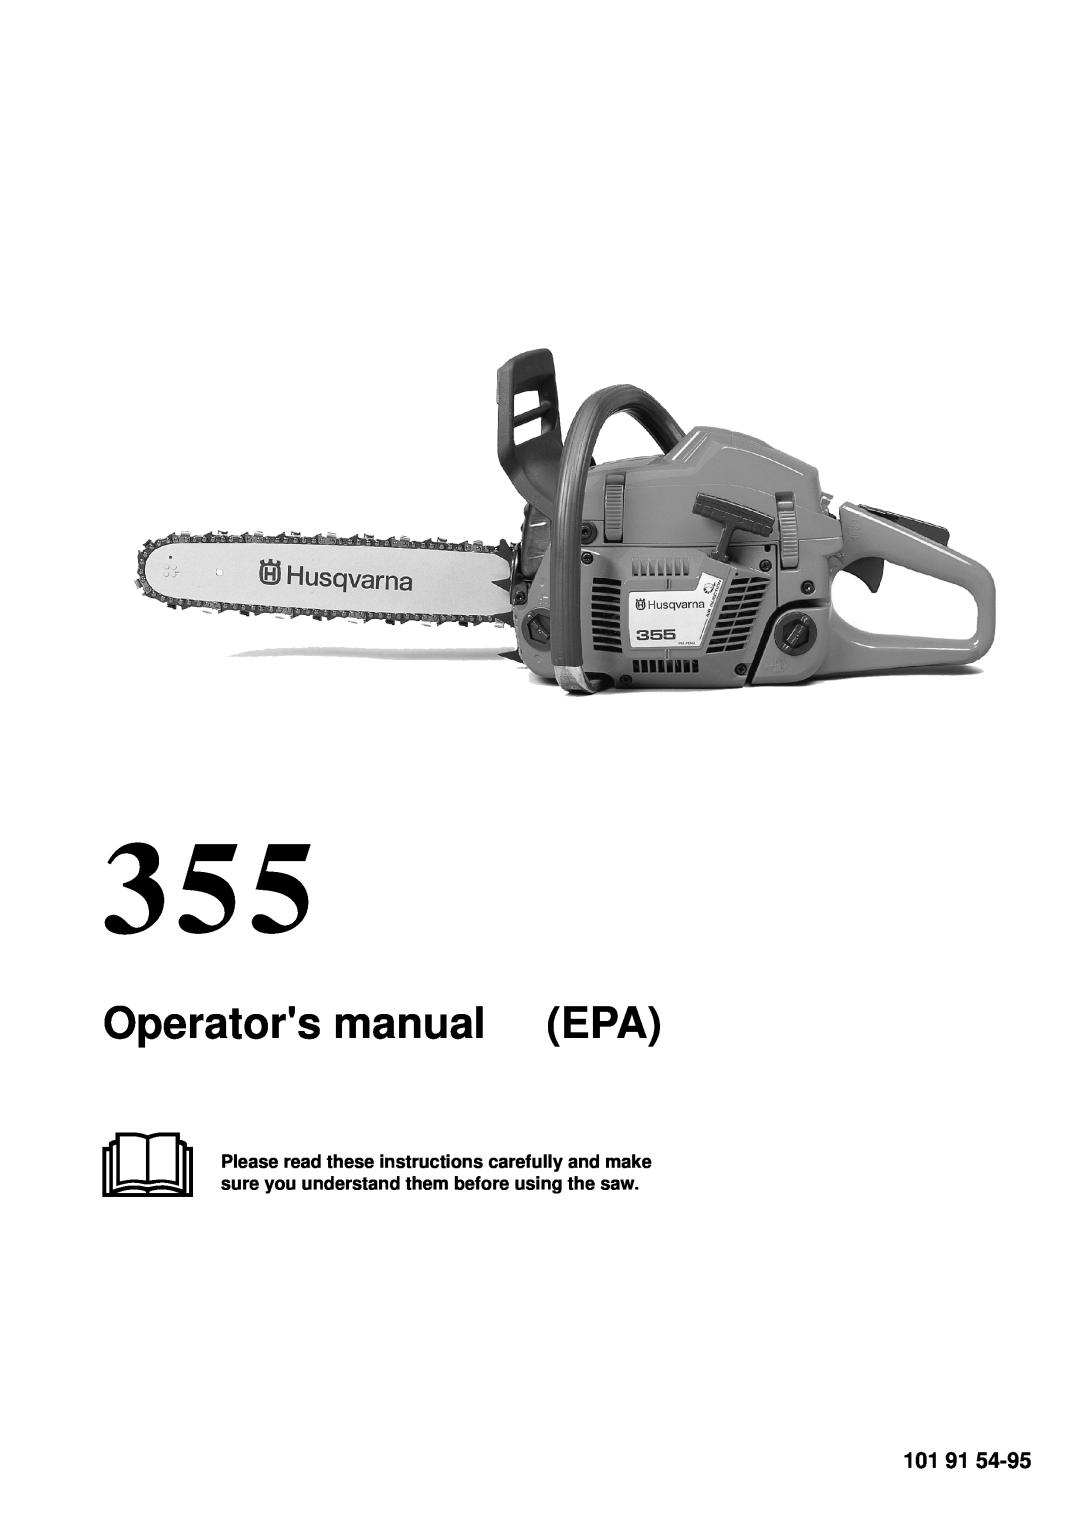 Husqvarna 355 manual 101 91, Operators manual EPA 